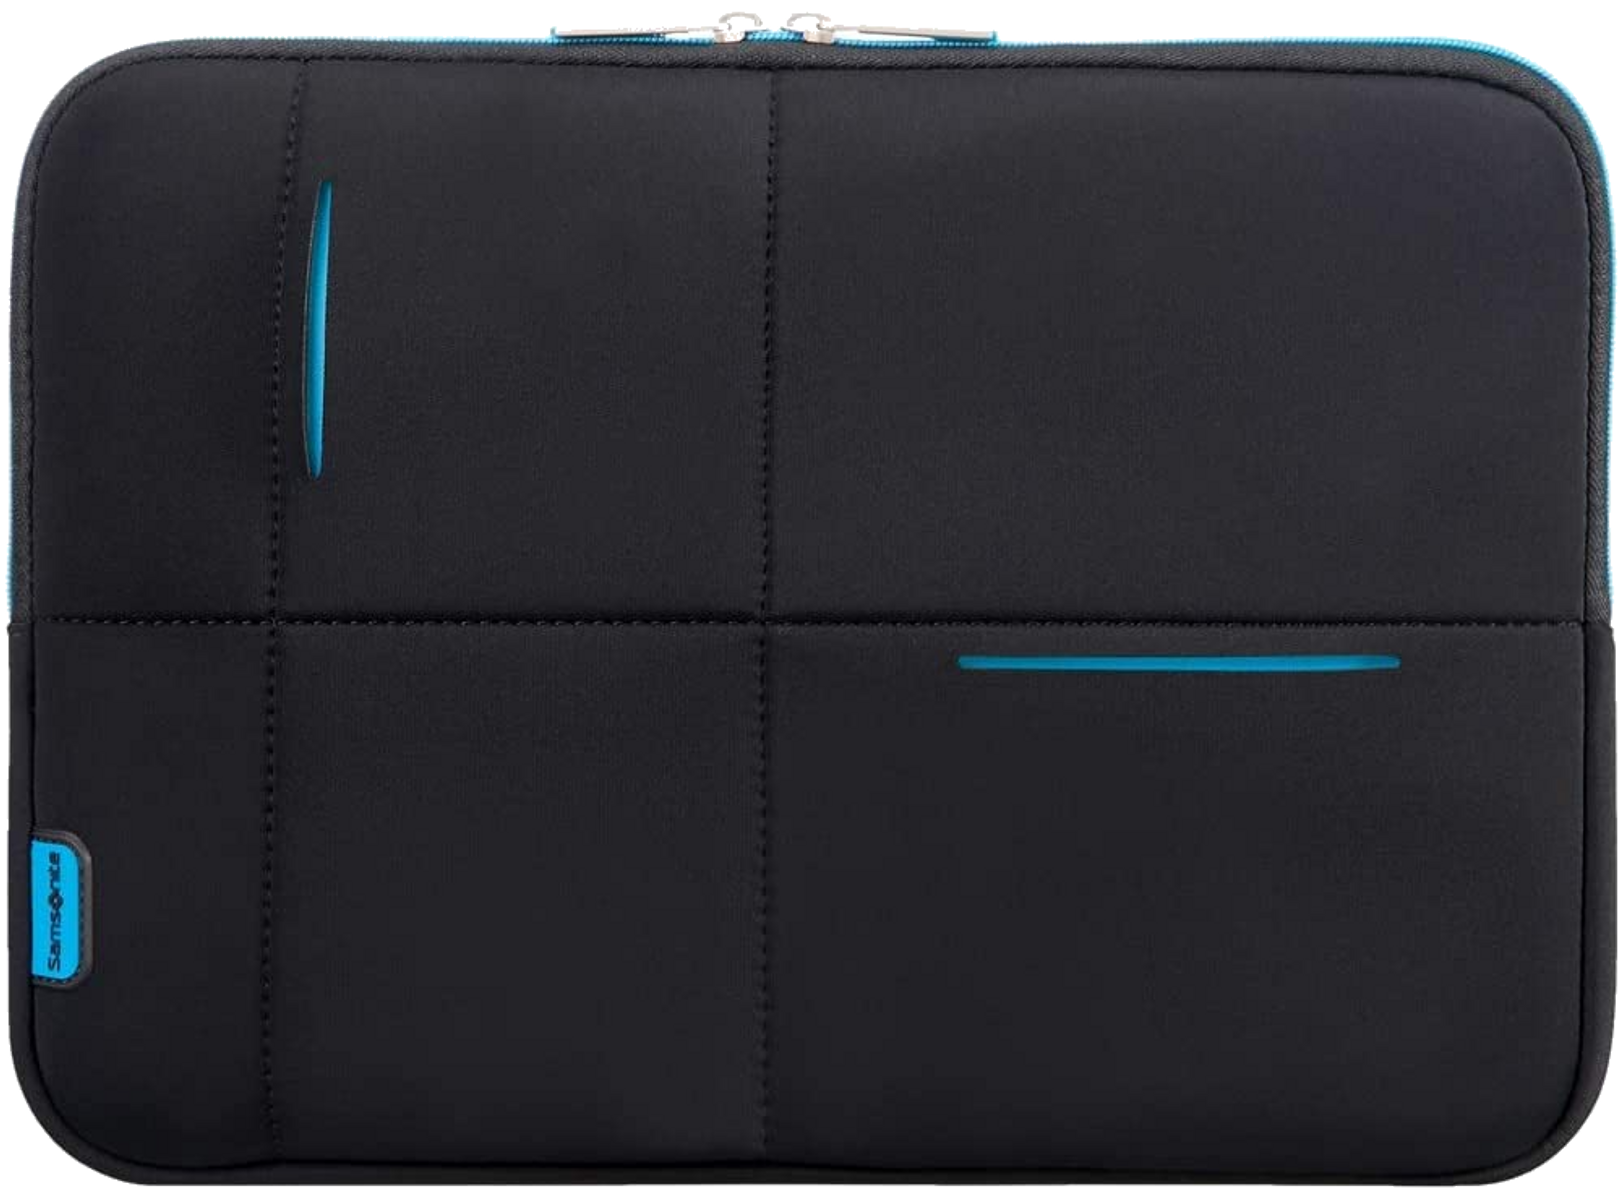 Notebooktasche Sling-Tasche SAMSONITE universal Airglow Polyester, 78145-2642 Neopren, für schwarz